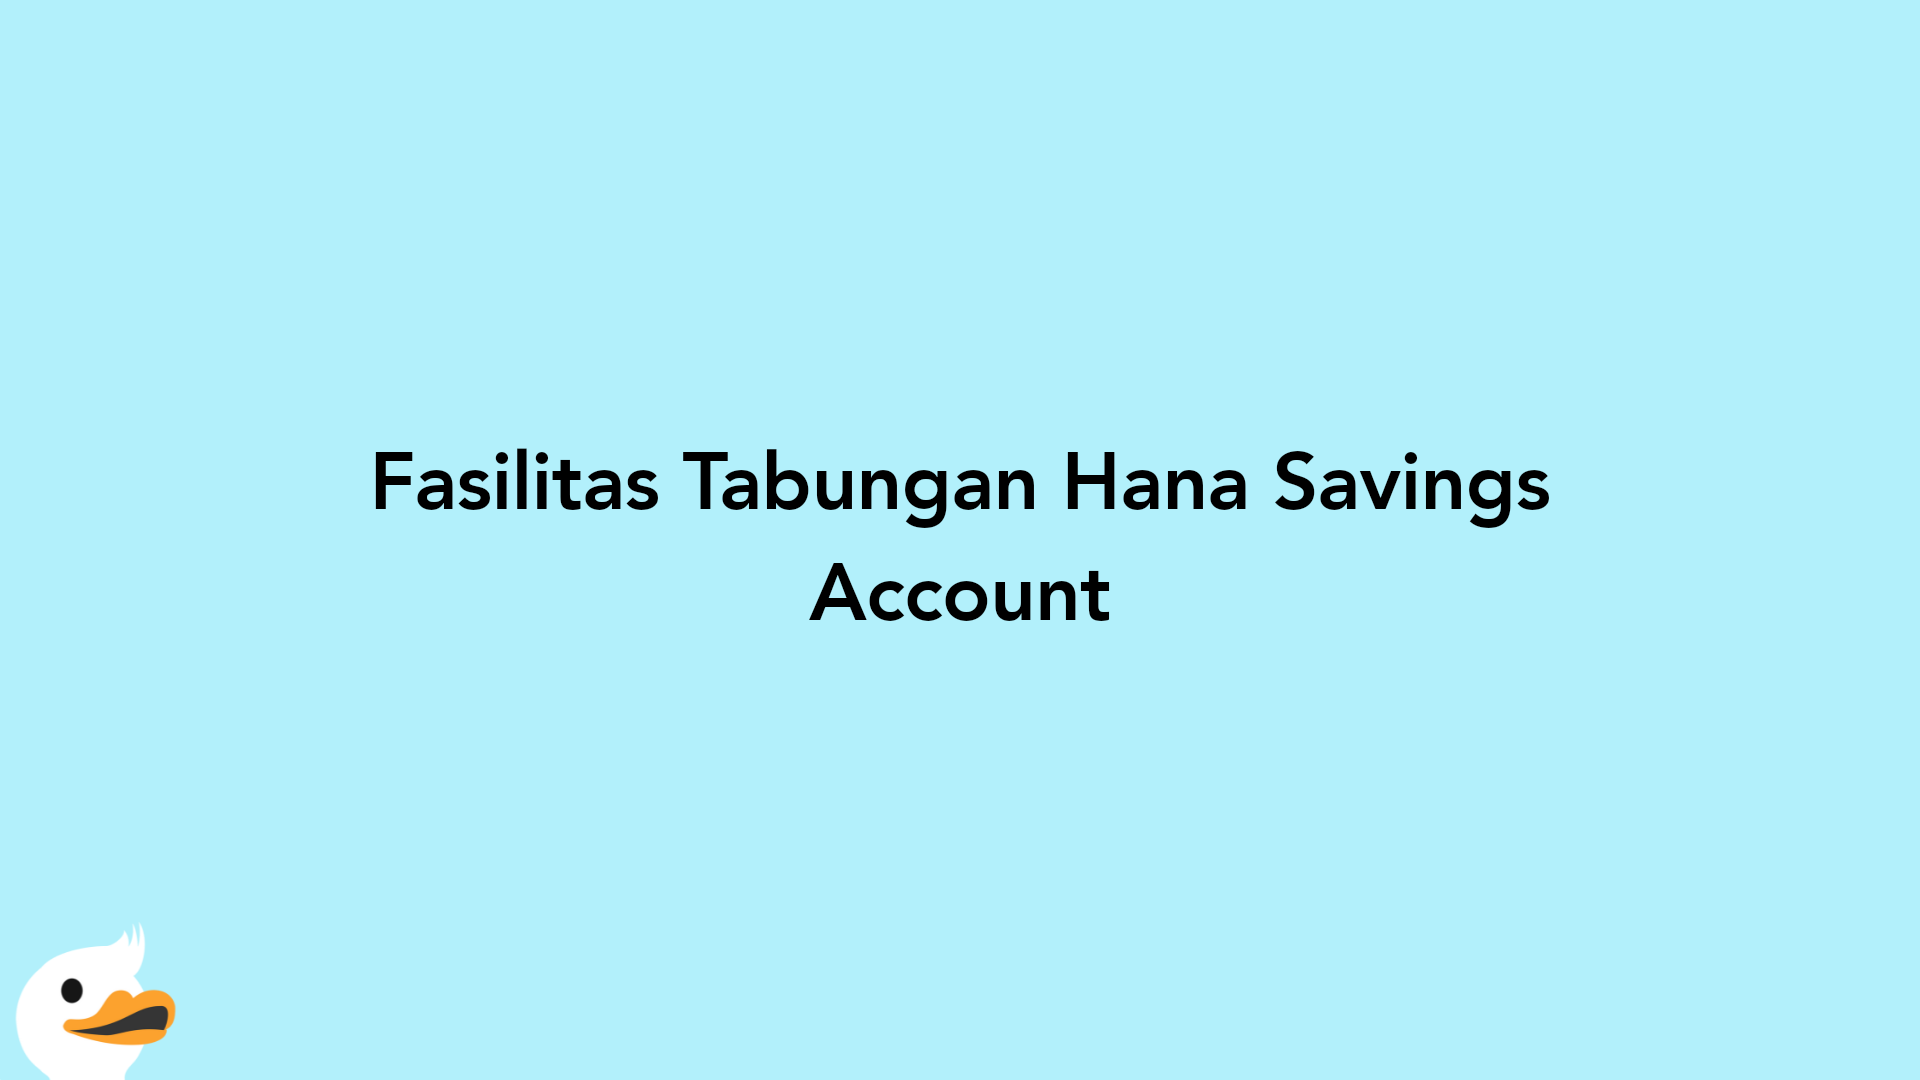 Fasilitas Tabungan Hana Savings Account